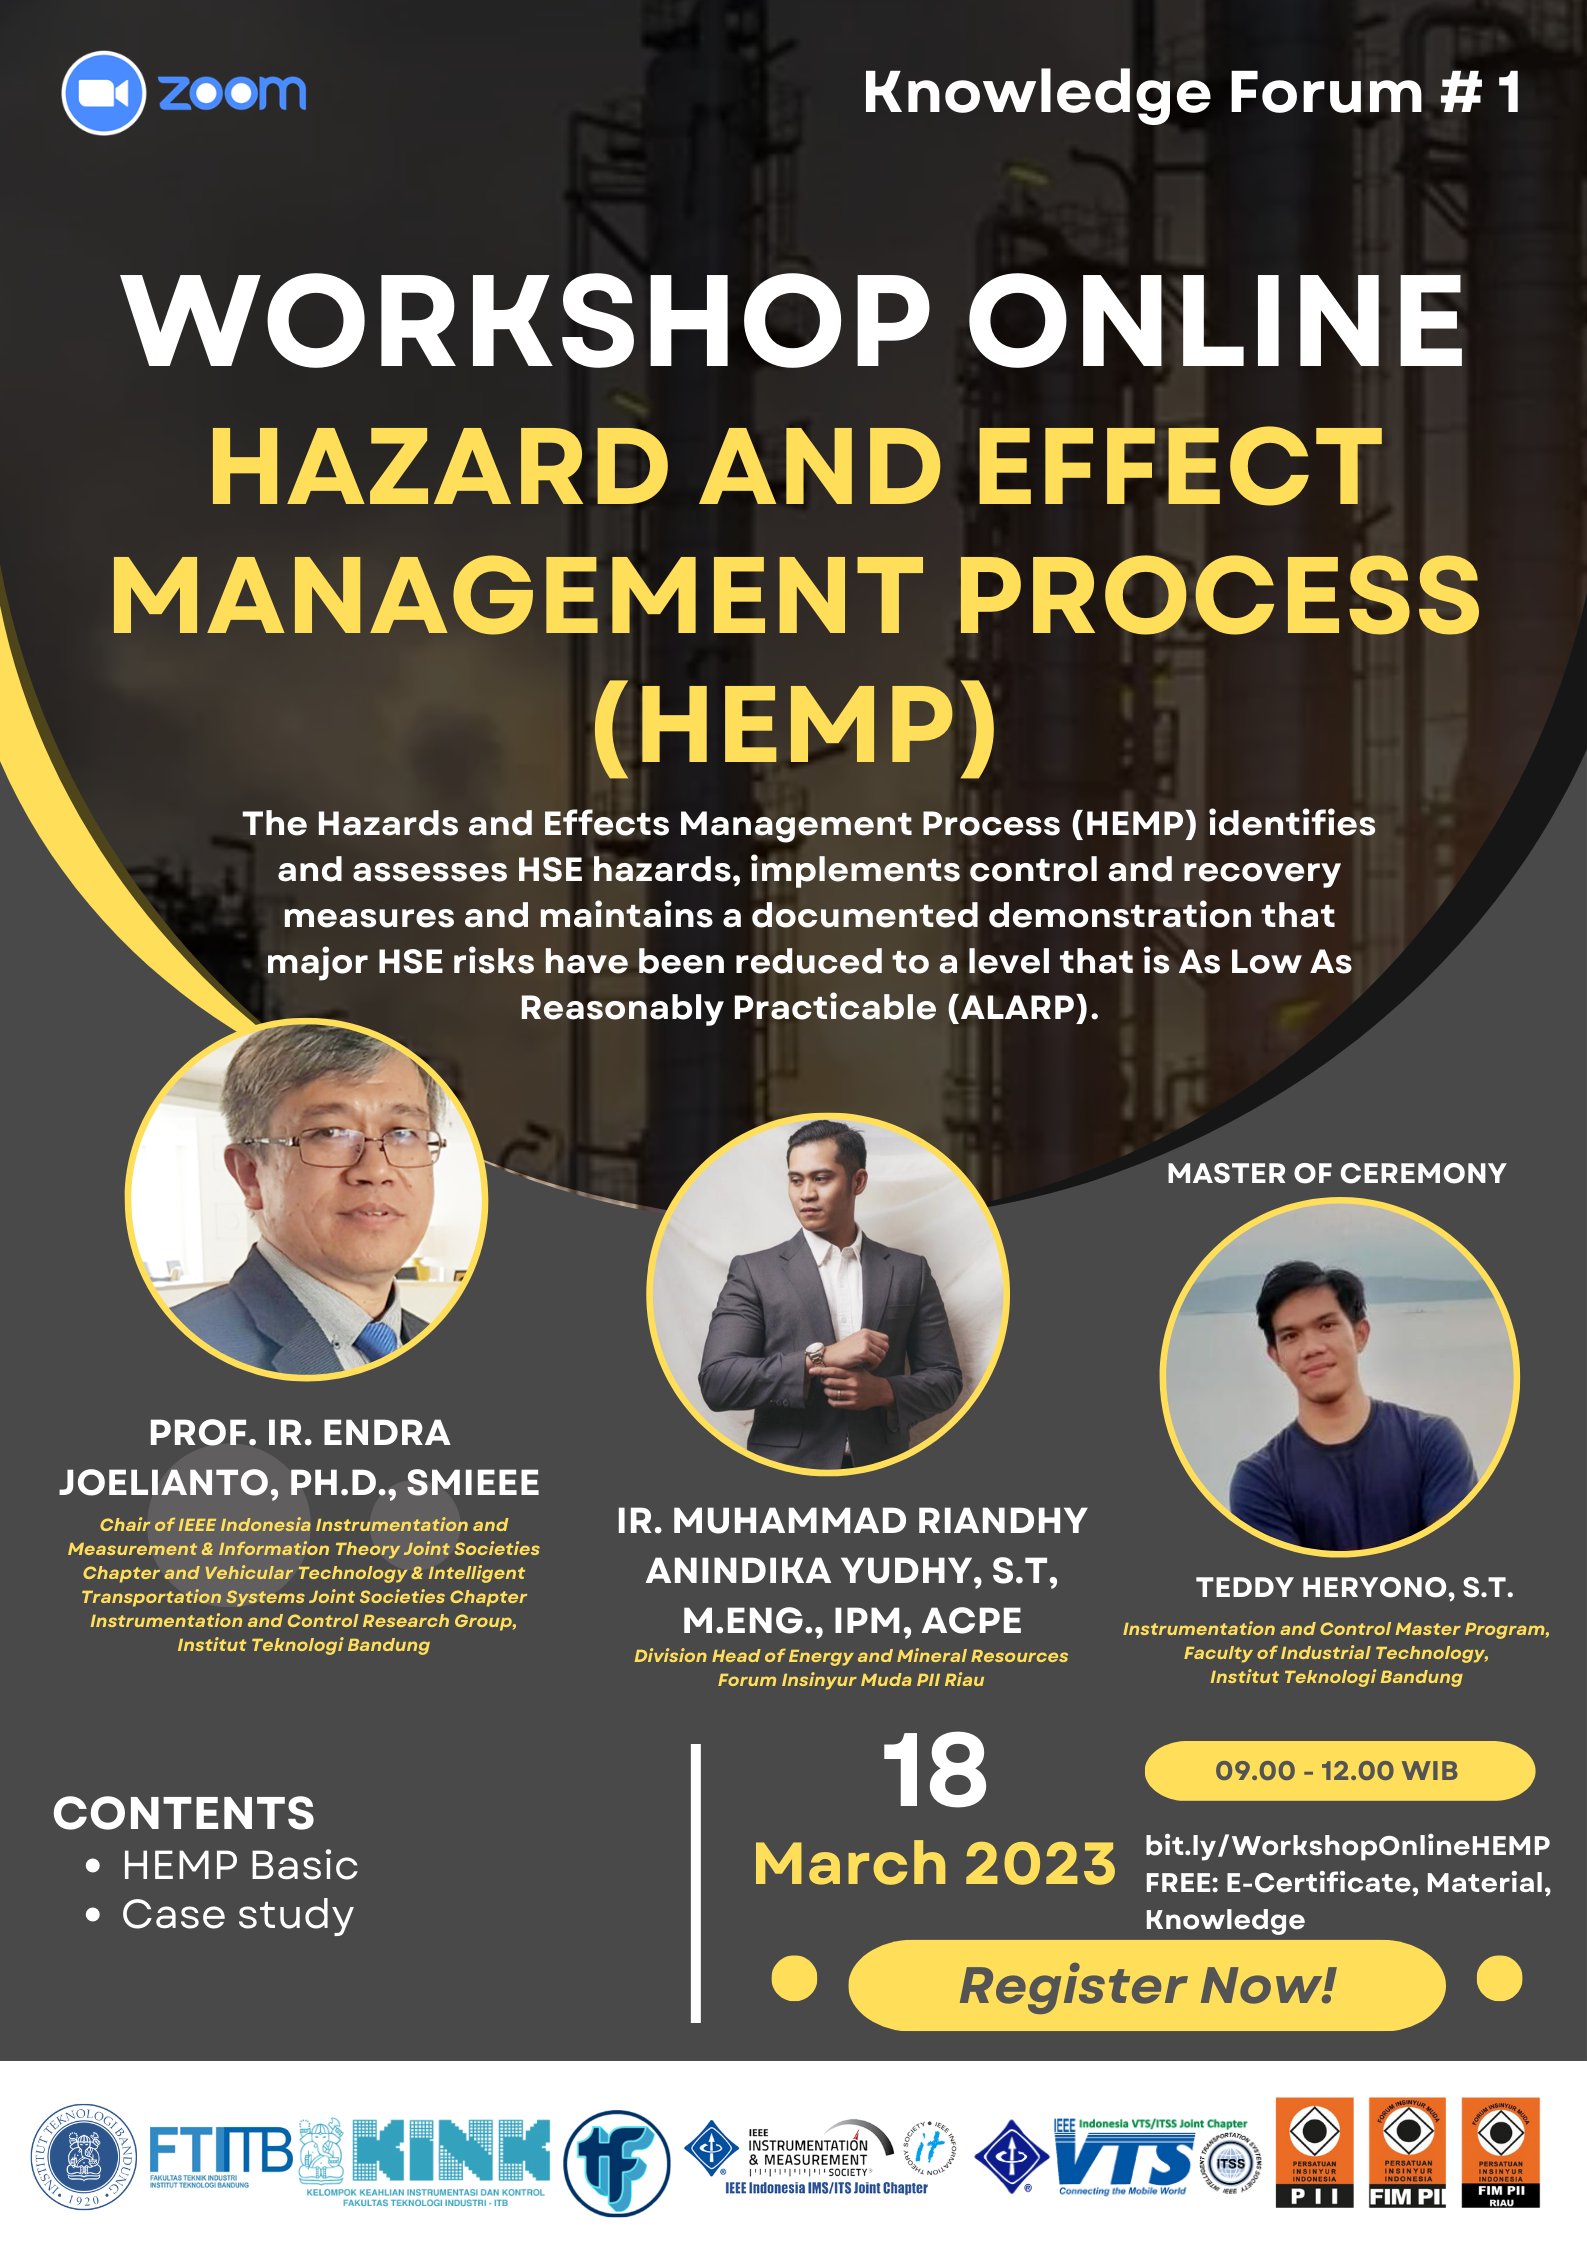 WORKSHOP ONLINE HAZARD AND EFFECT MANAGEMENT PROCESS (HEMP)